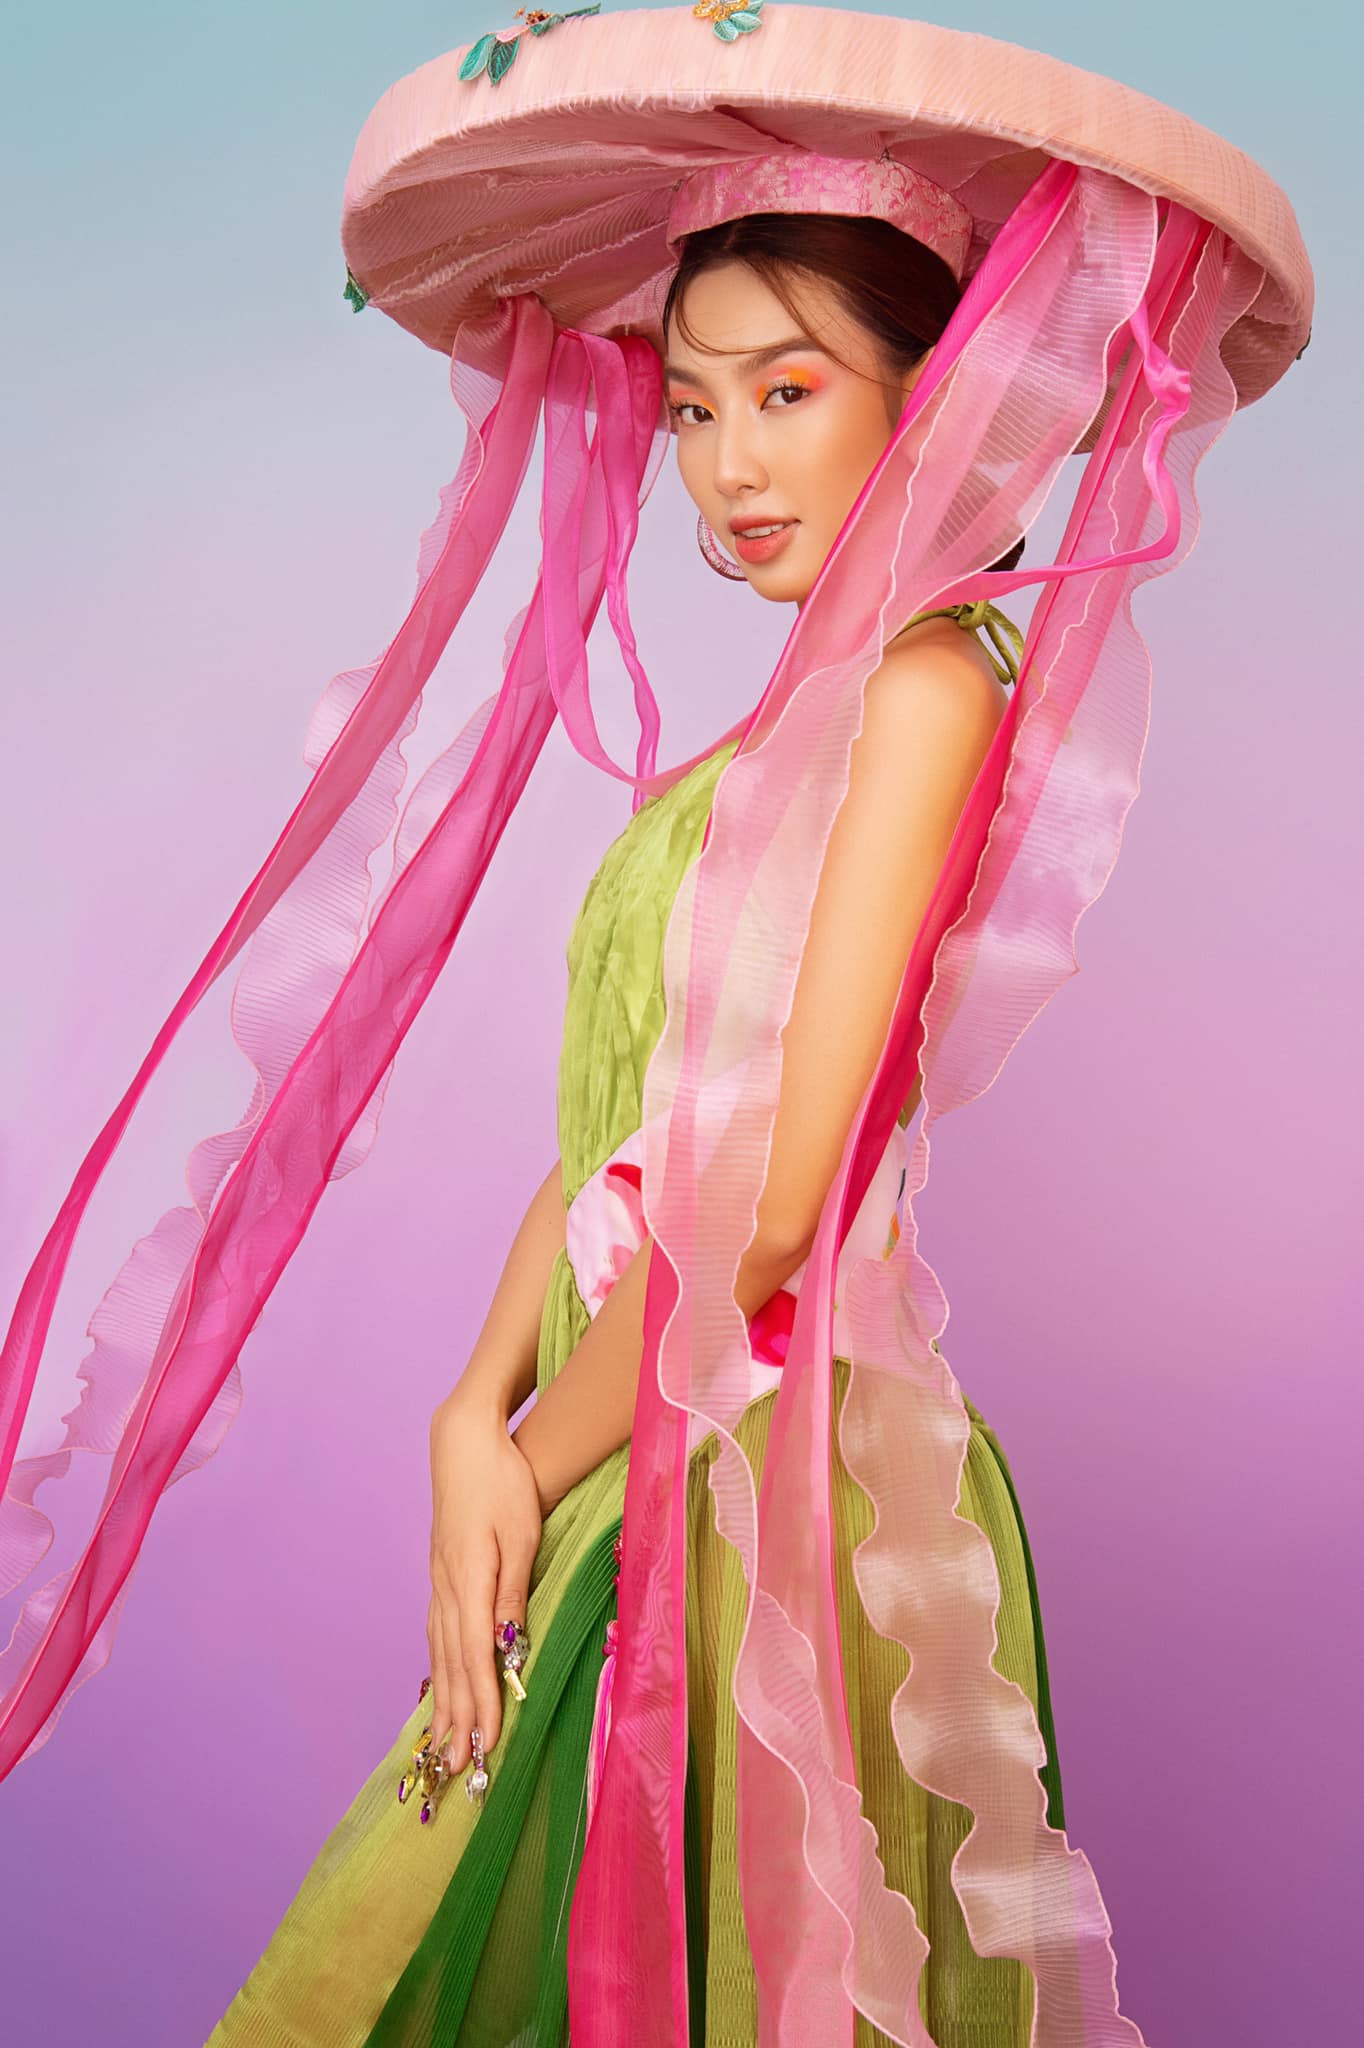 Hãy cùng chiêm ngưỡng vẻ đẹp quyến rũ của hoa hậu Nguyễn Thúc Thùy Tiên trong bức ảnh đầy nghệ thuật này!